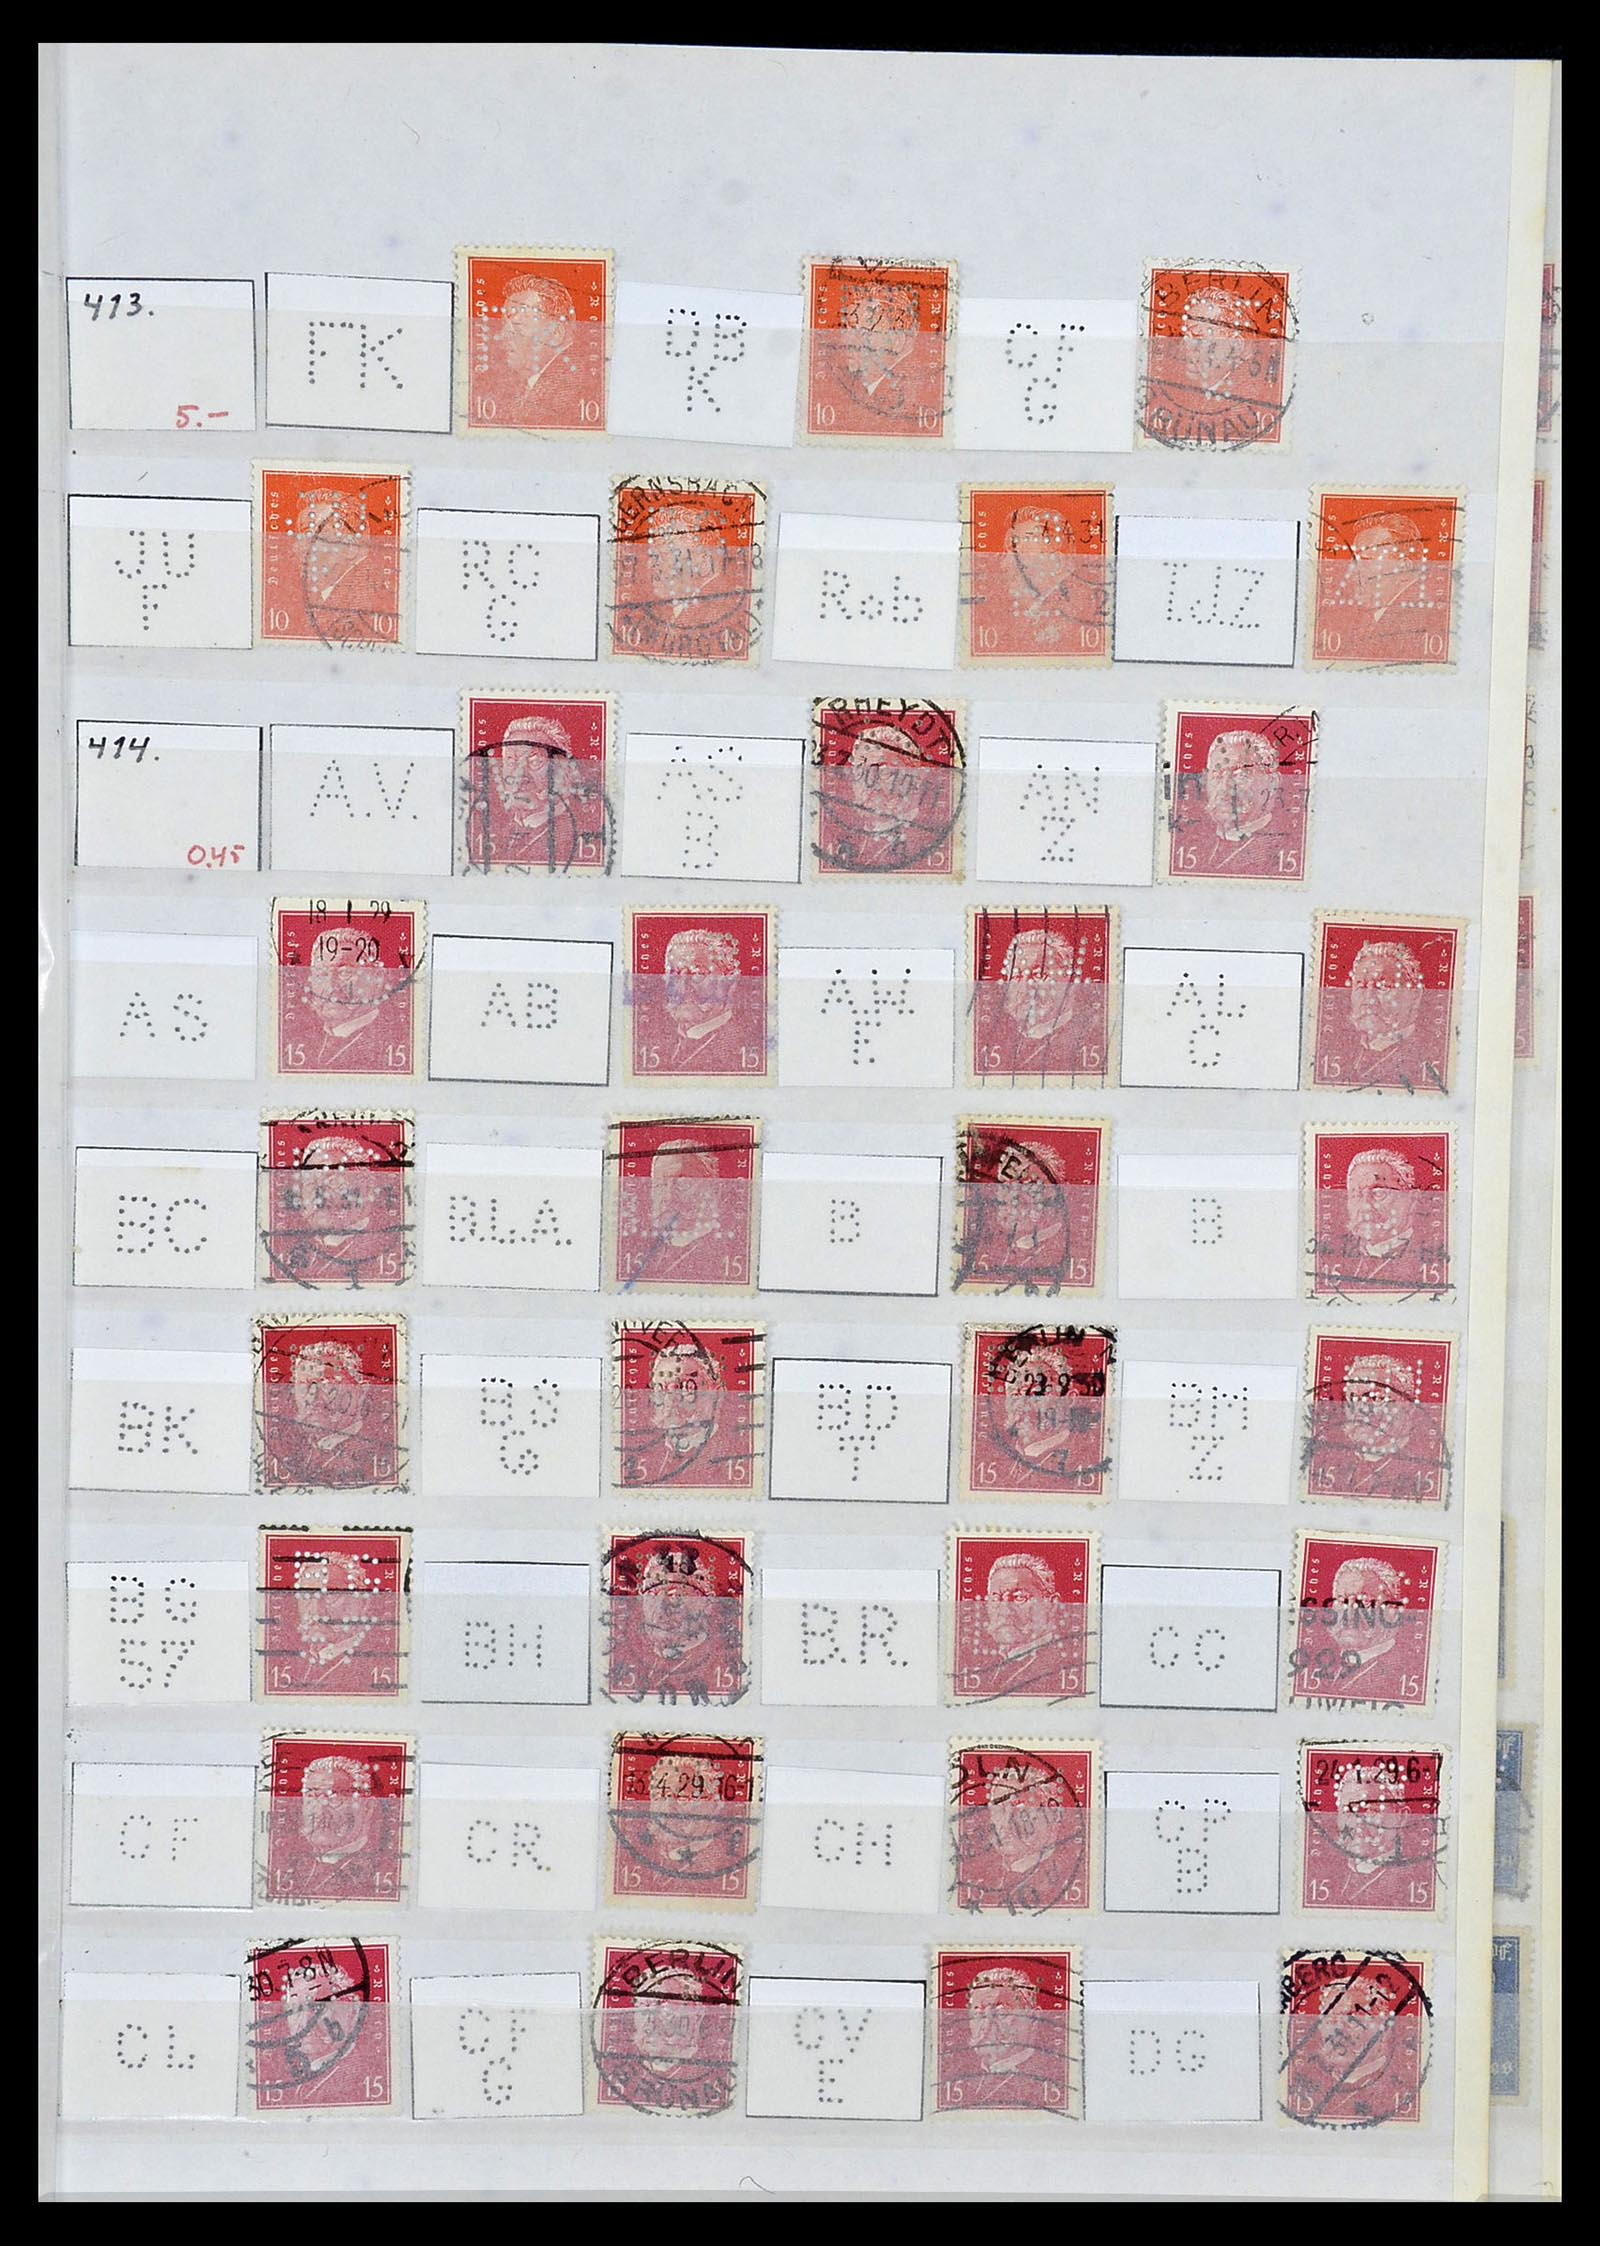 34071 031 - Stamp collection 34071 German Reich perfins 1923-1930.